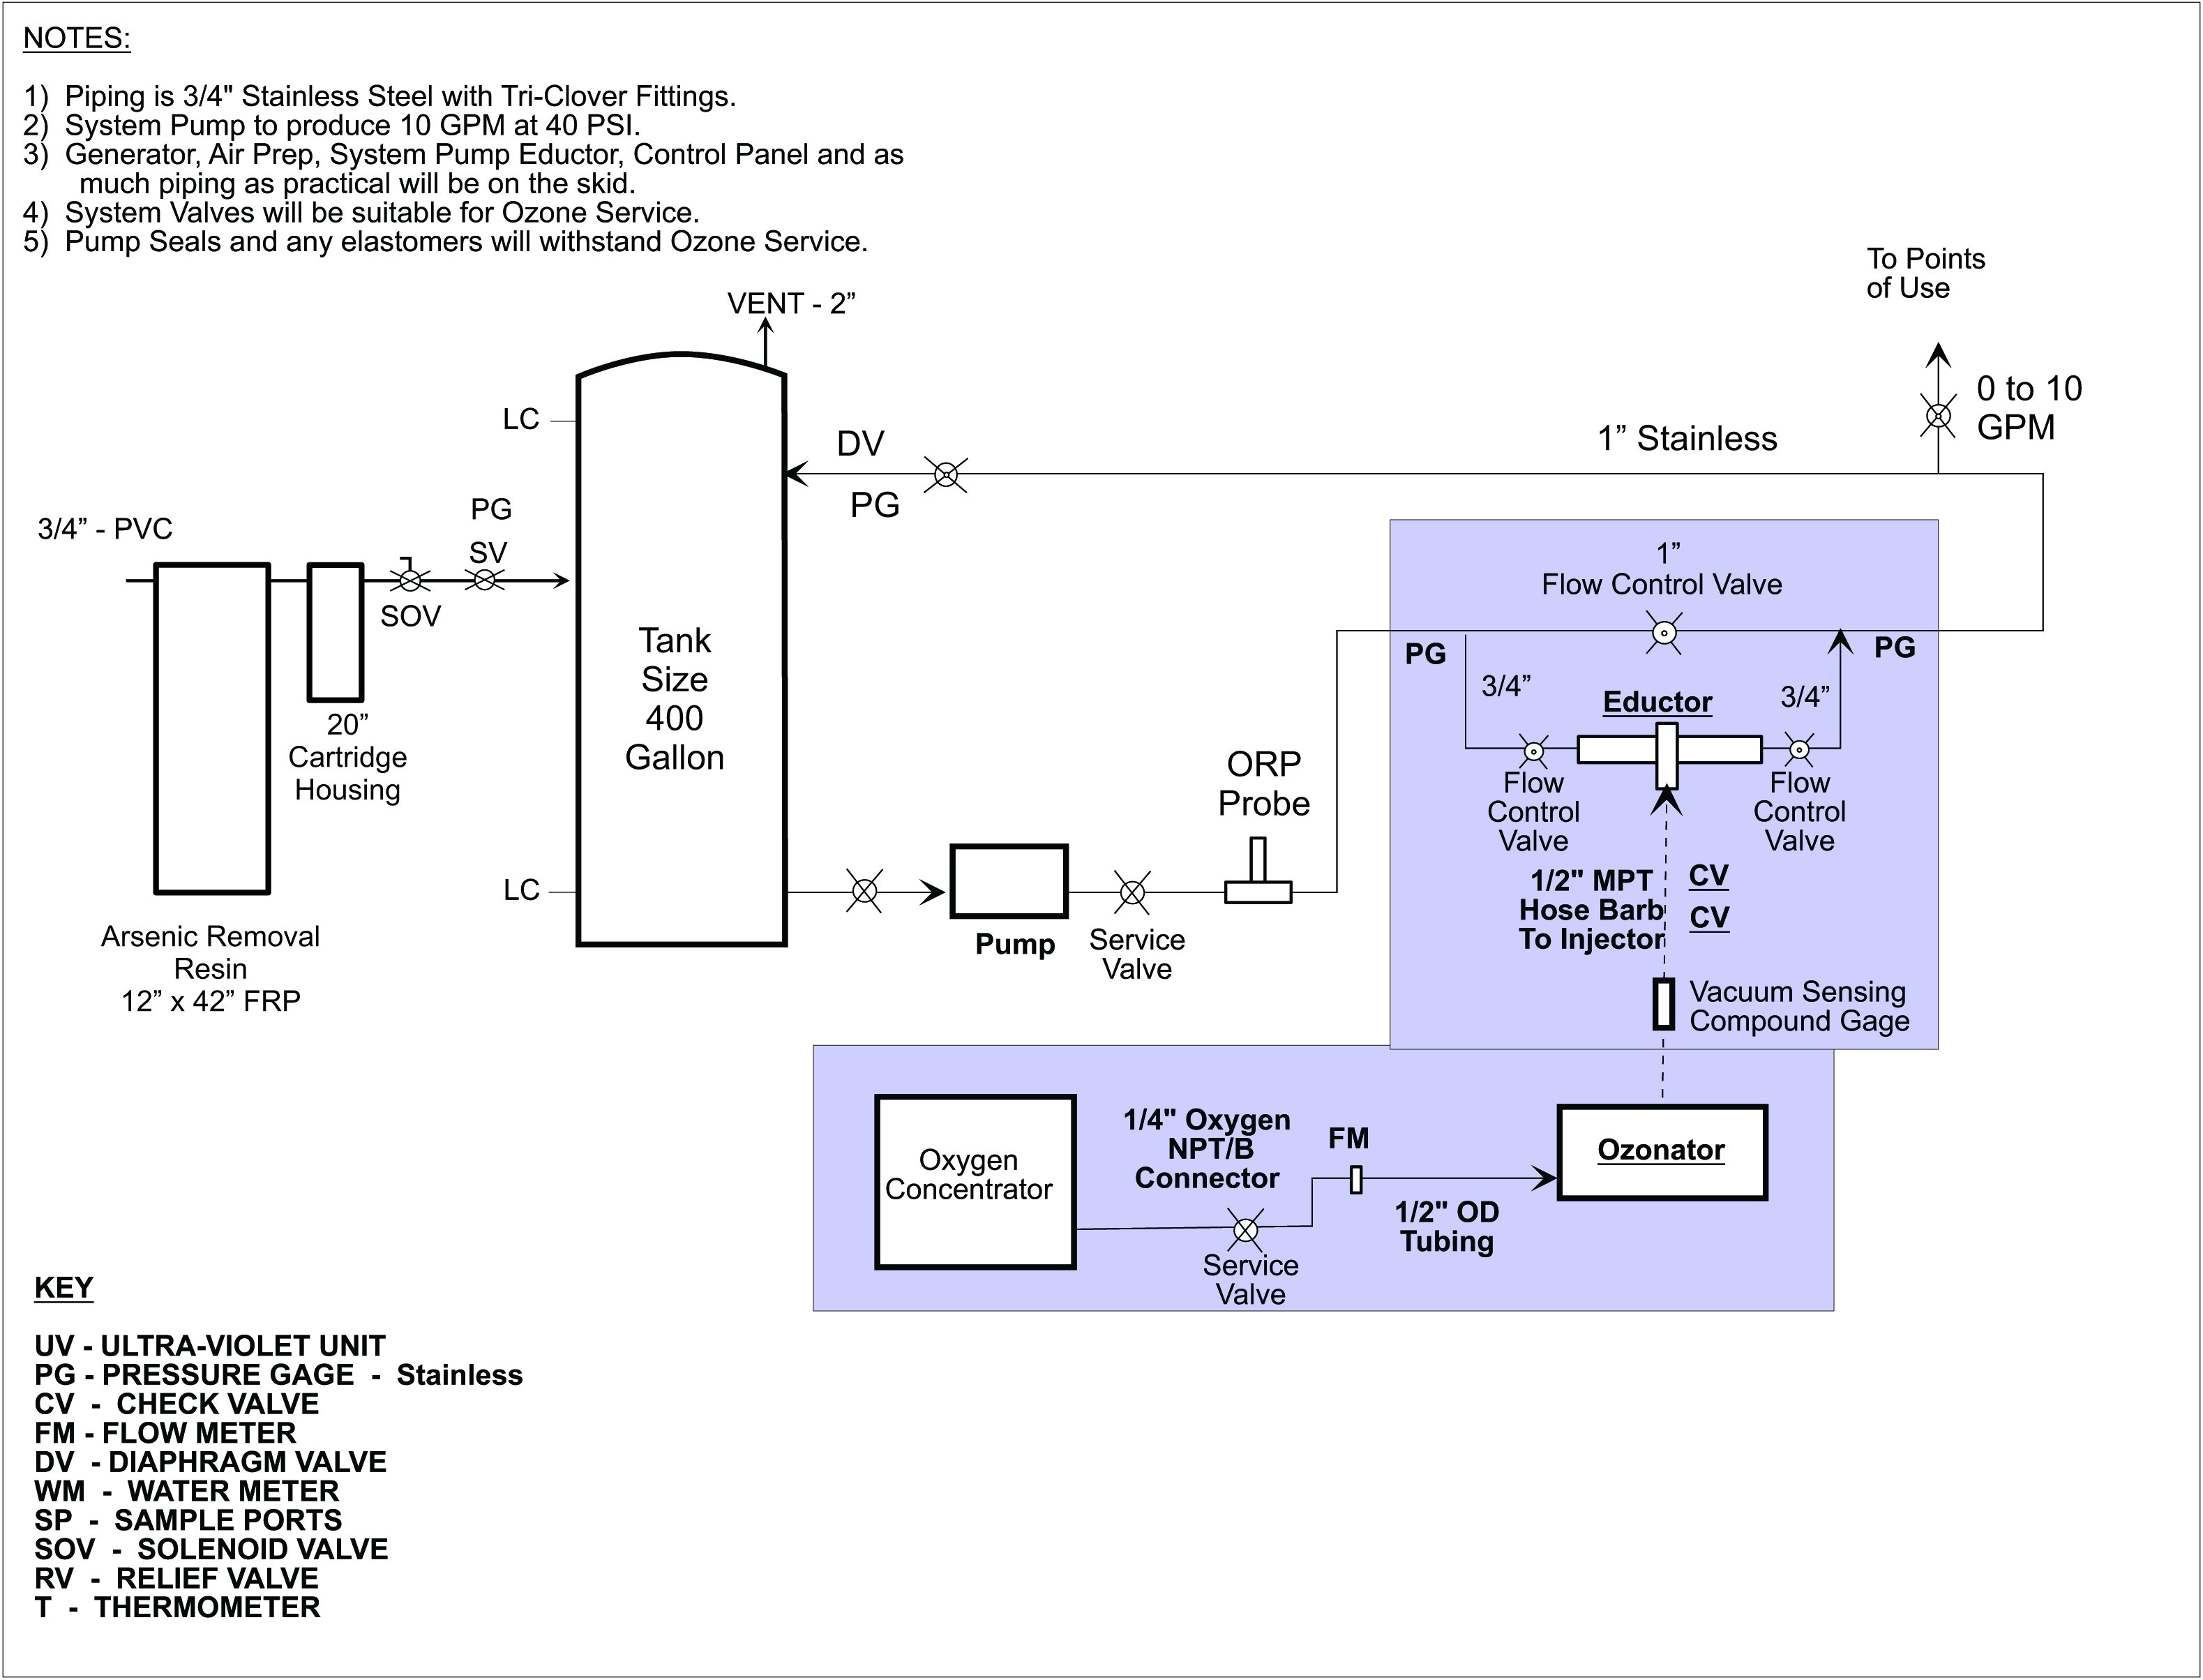 tamper alarm circuit diagram tradeoficcom schema diagram database tamper wiring diagram for